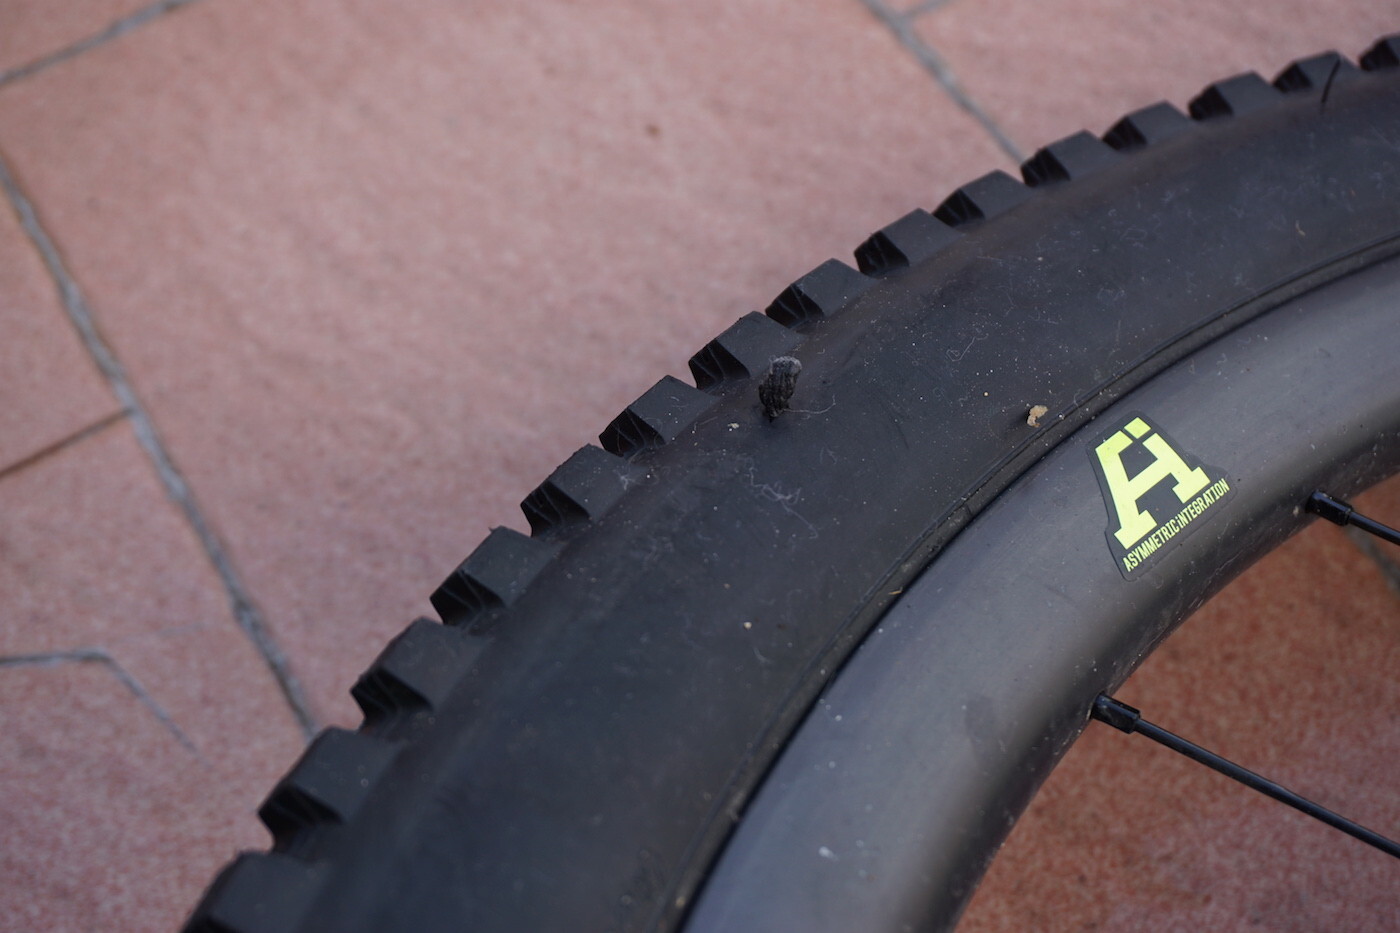 Schlauchloser Reifen-Durchbohren-Reparatur-Set Stockbild - Bild